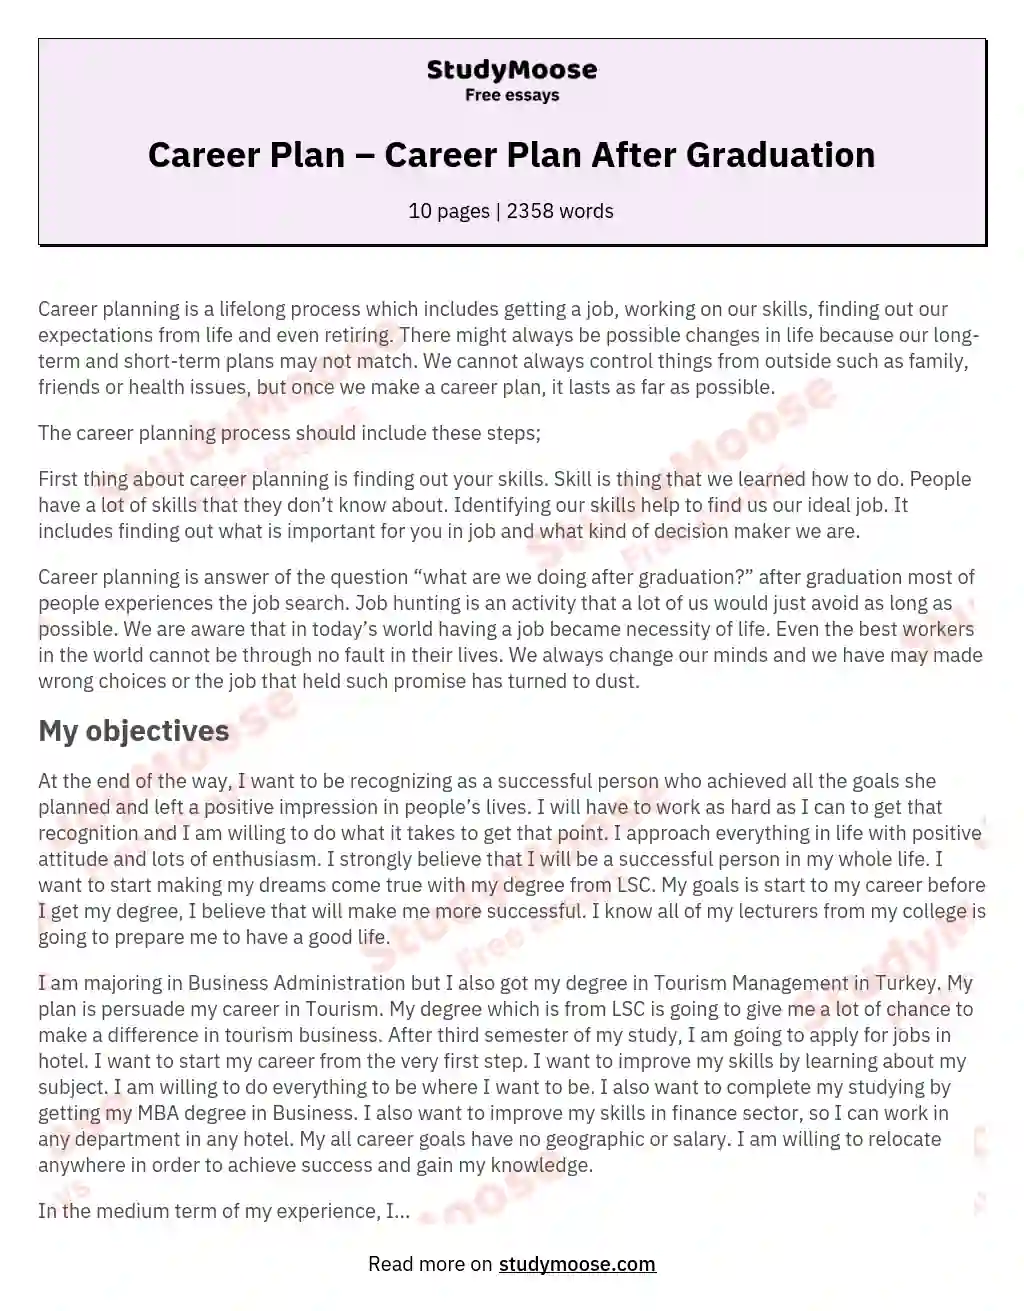 Career Plan  – Career Plan After Graduation essay